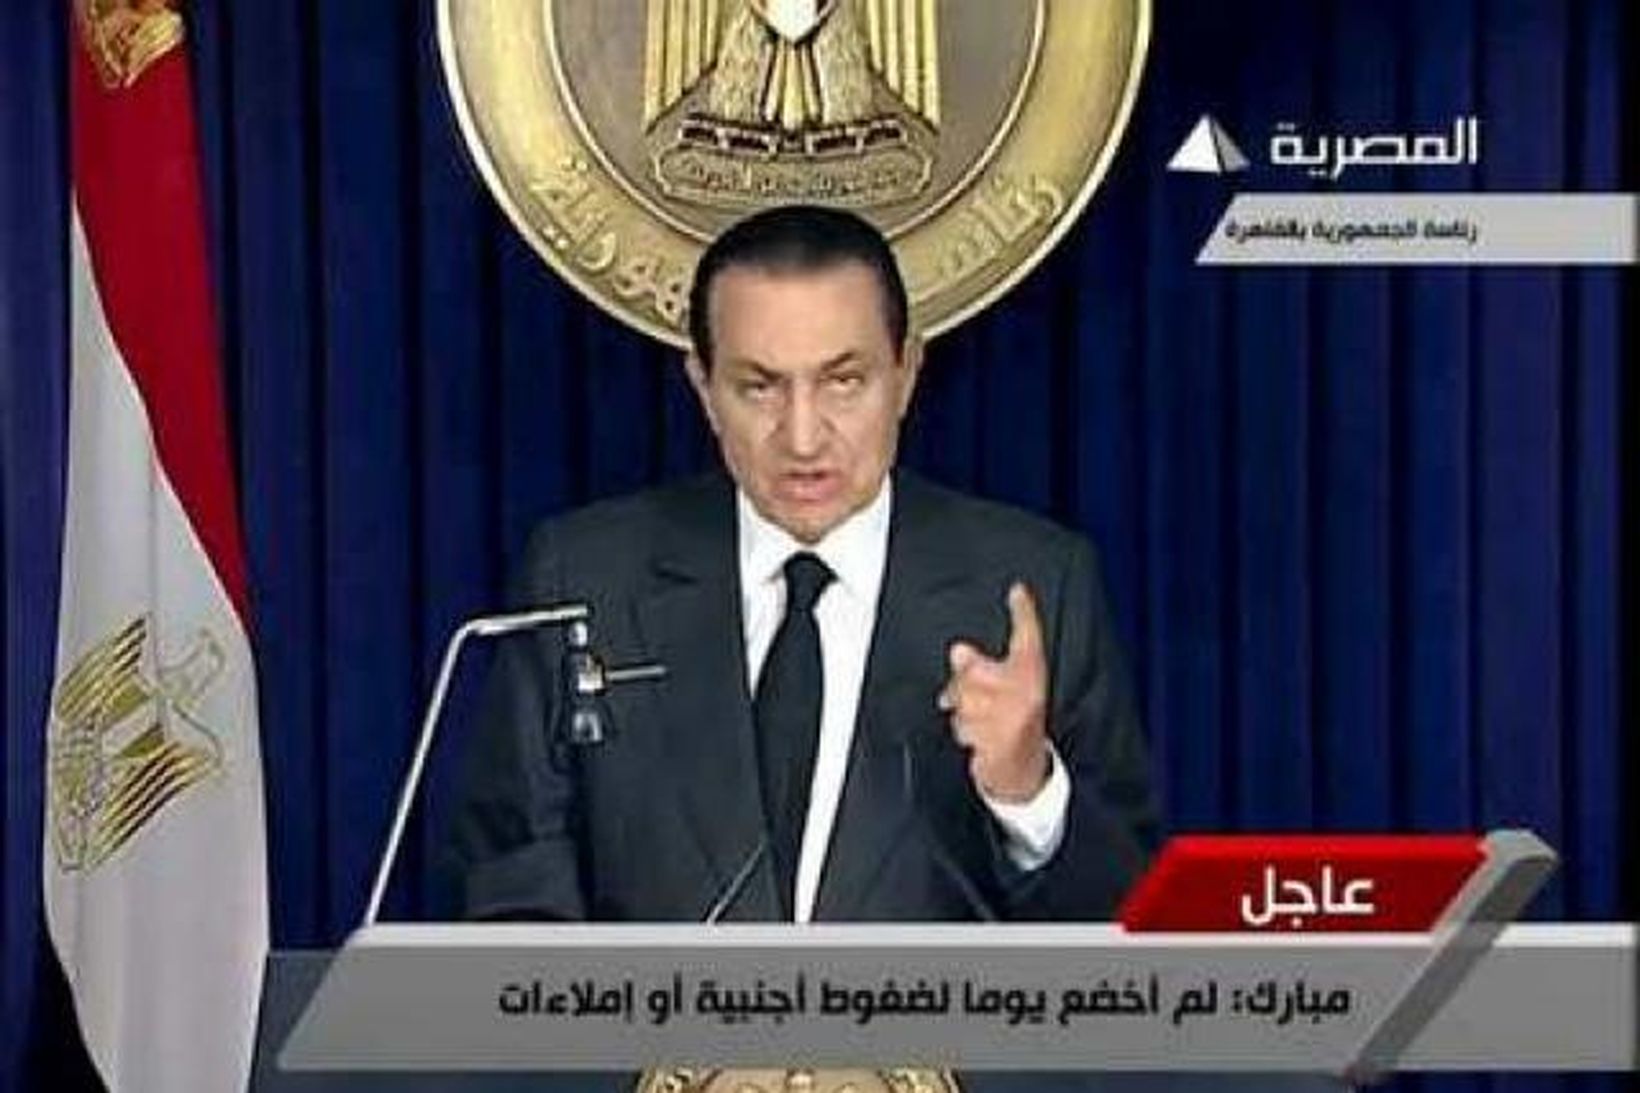 Hosni Mubarak, forseti Egyptalands, sagði af sér embætti á föstudaginn …